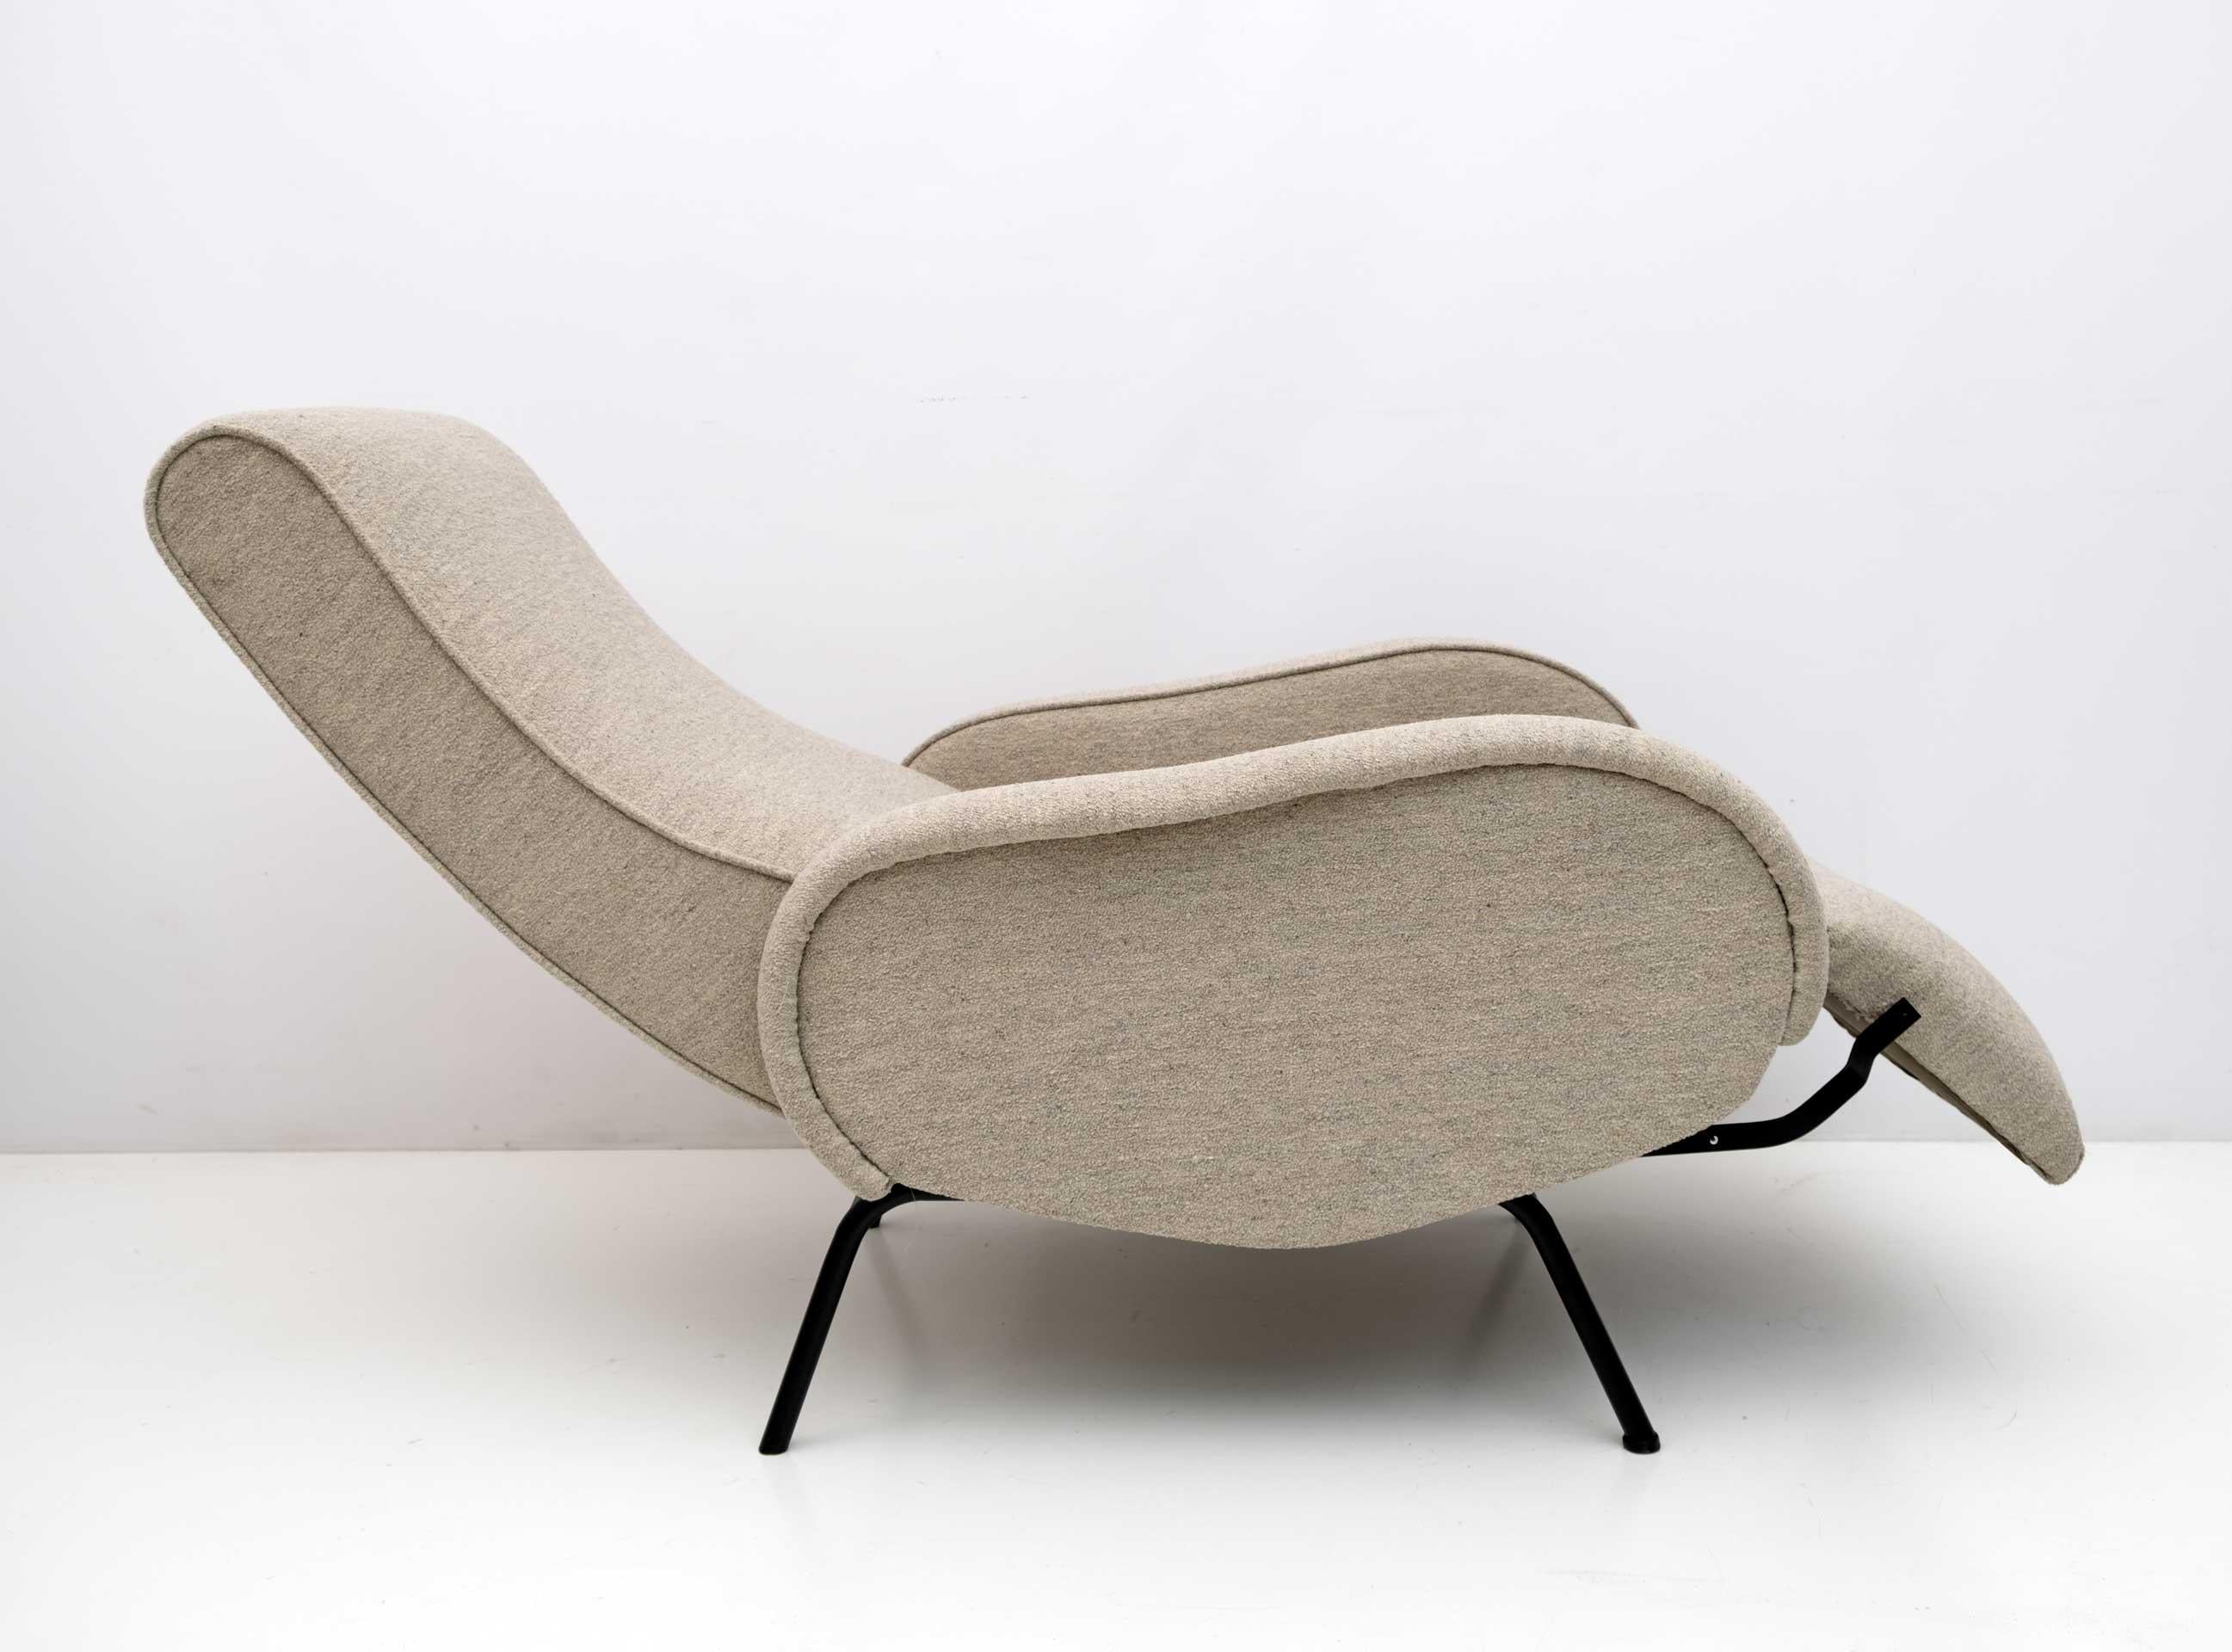 Der von Marco Zanuso in den 1950er Jahren entworfene Liegesessel wurde restauriert und mit elfenbeinfarbenem Bouclè-Stoff gepolstert.
Der verlängerte Stuhl misst 150 cm.